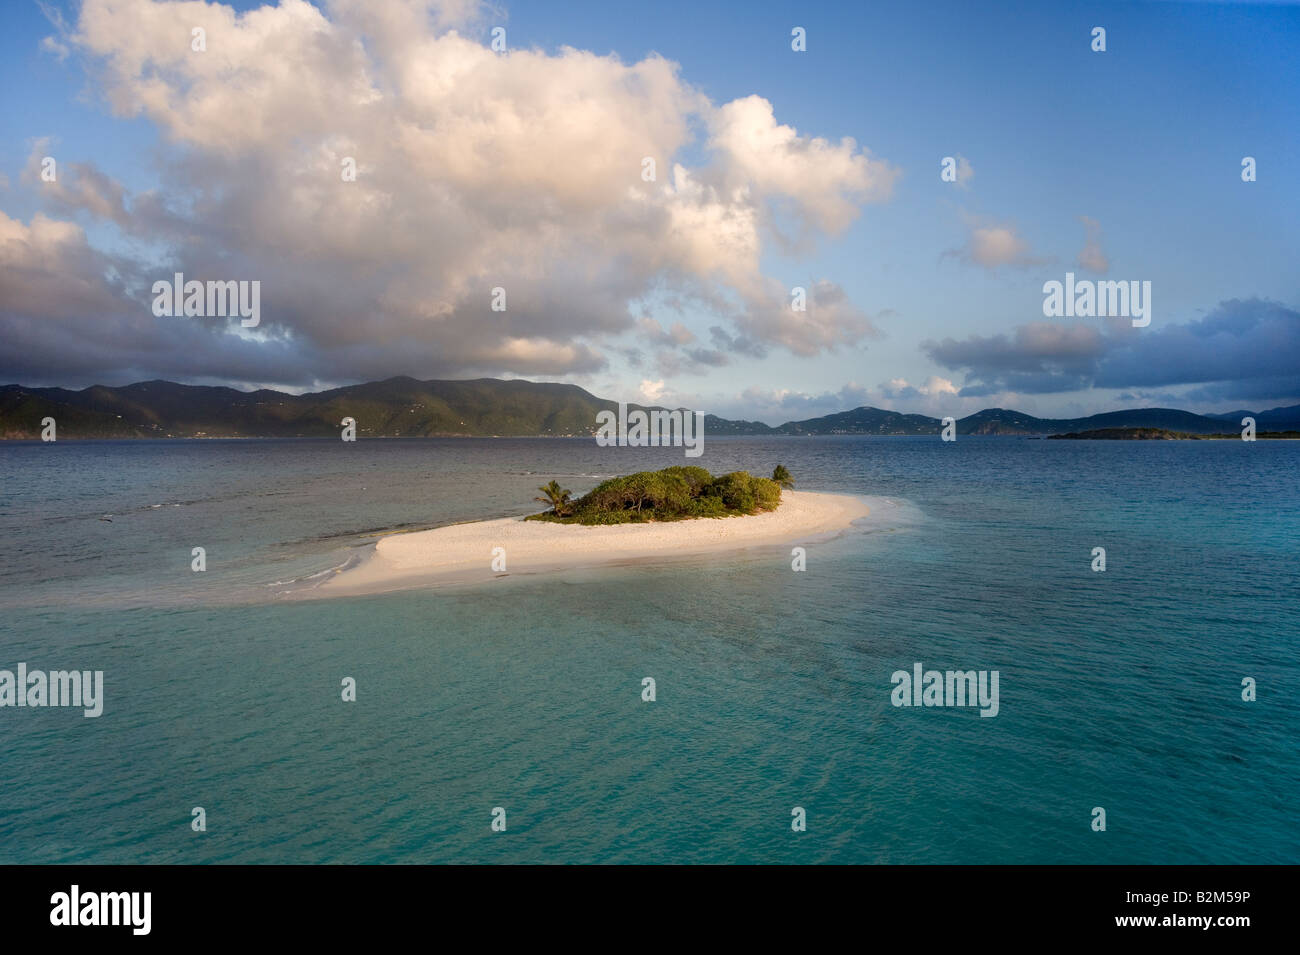 La piccola isola deserta di Sandy Spit British West Indies si tratta di una rara vista del normalmente affollata isola Foto Stock